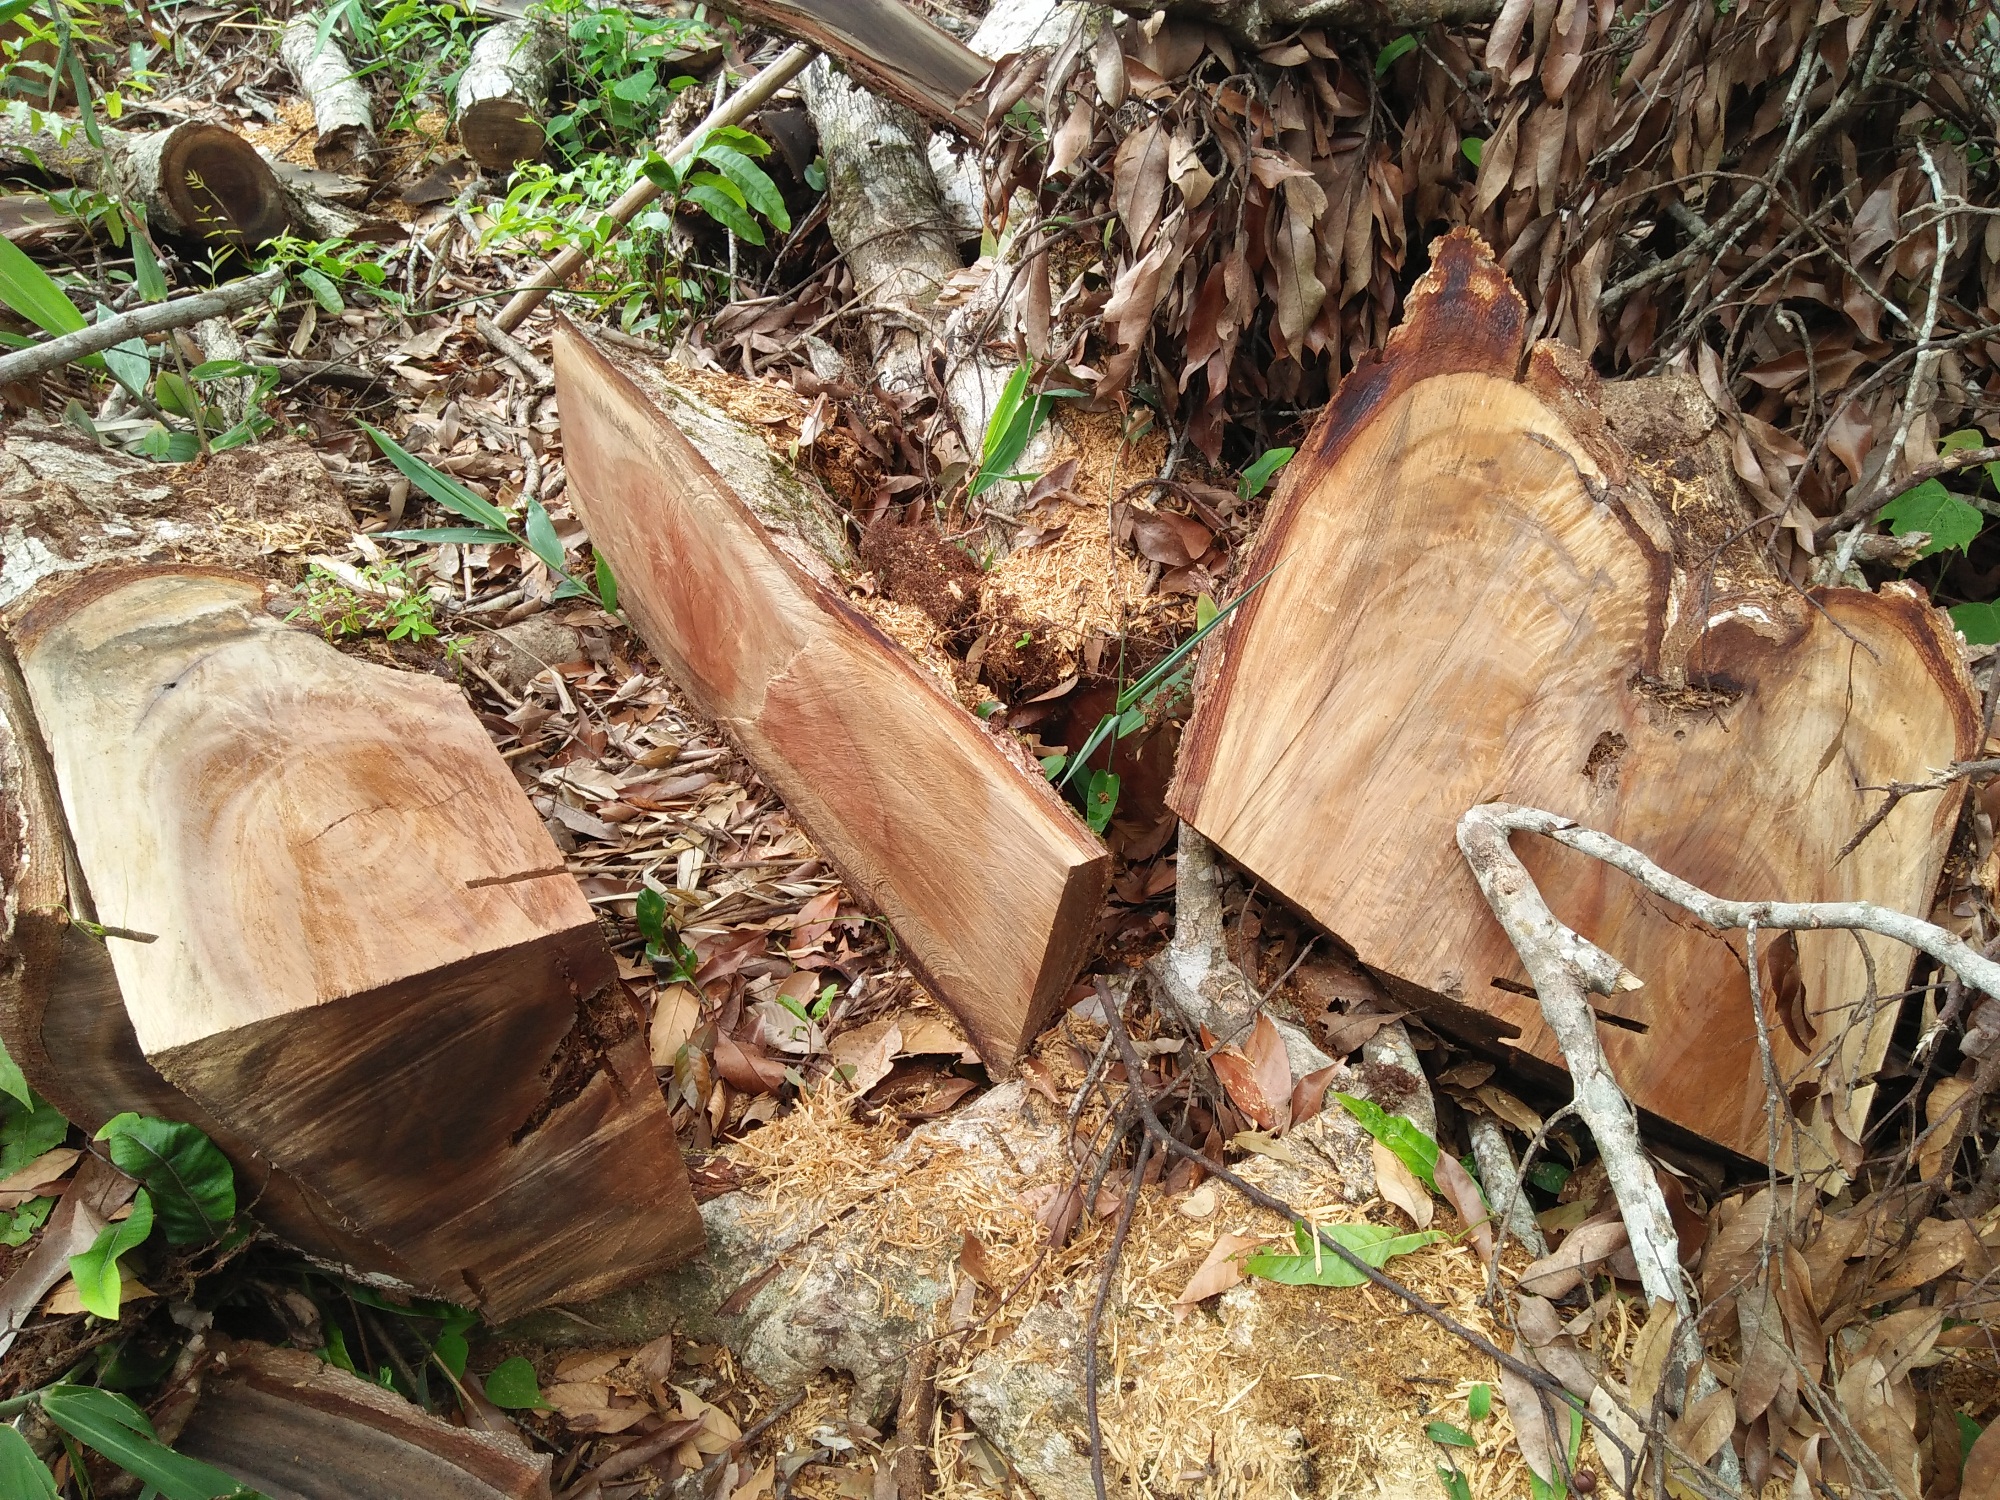 Bất chấp những quyết tâm và mệnh lệnh của Chính phủ, tại nhiều địa phương trên cả nước, tình trạng “phá sơn lâm,” làm suy giảm diện tích rừng tự nhiên vẫn diễn biến hết sức phức tạp. (Ảnh: Vietnam+)